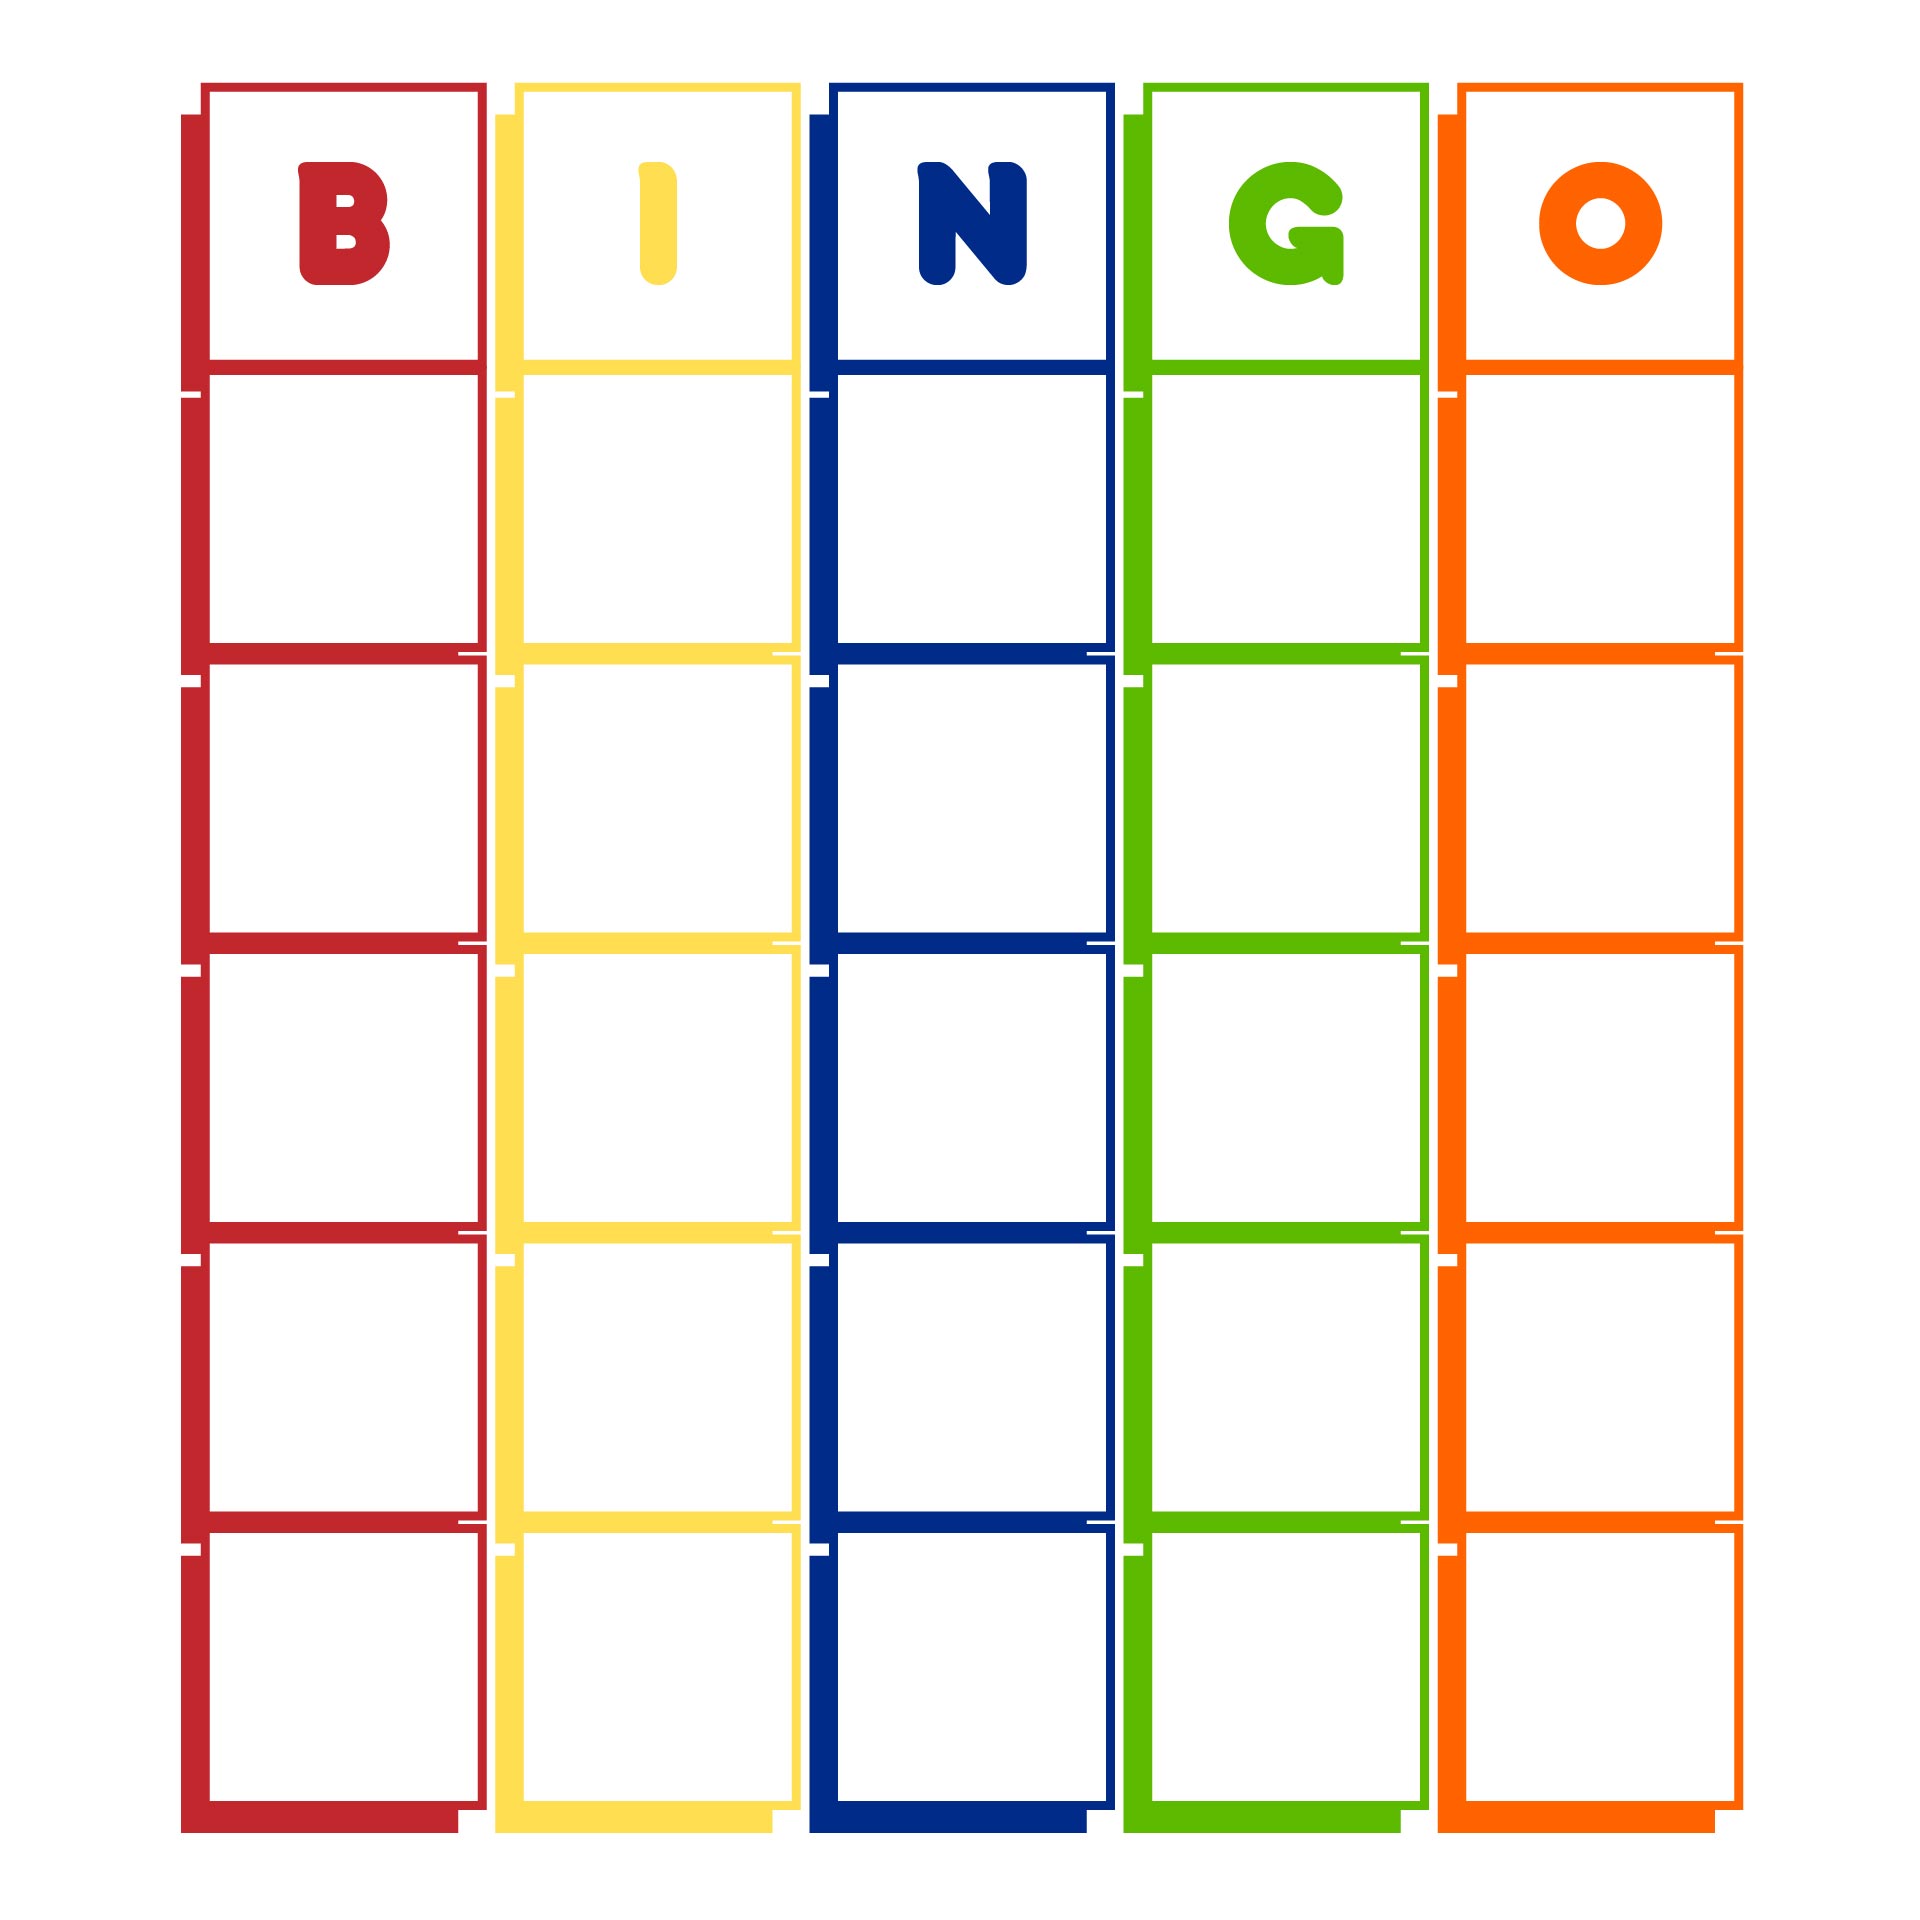 blank-bingo-board-printable-printable-world-holiday